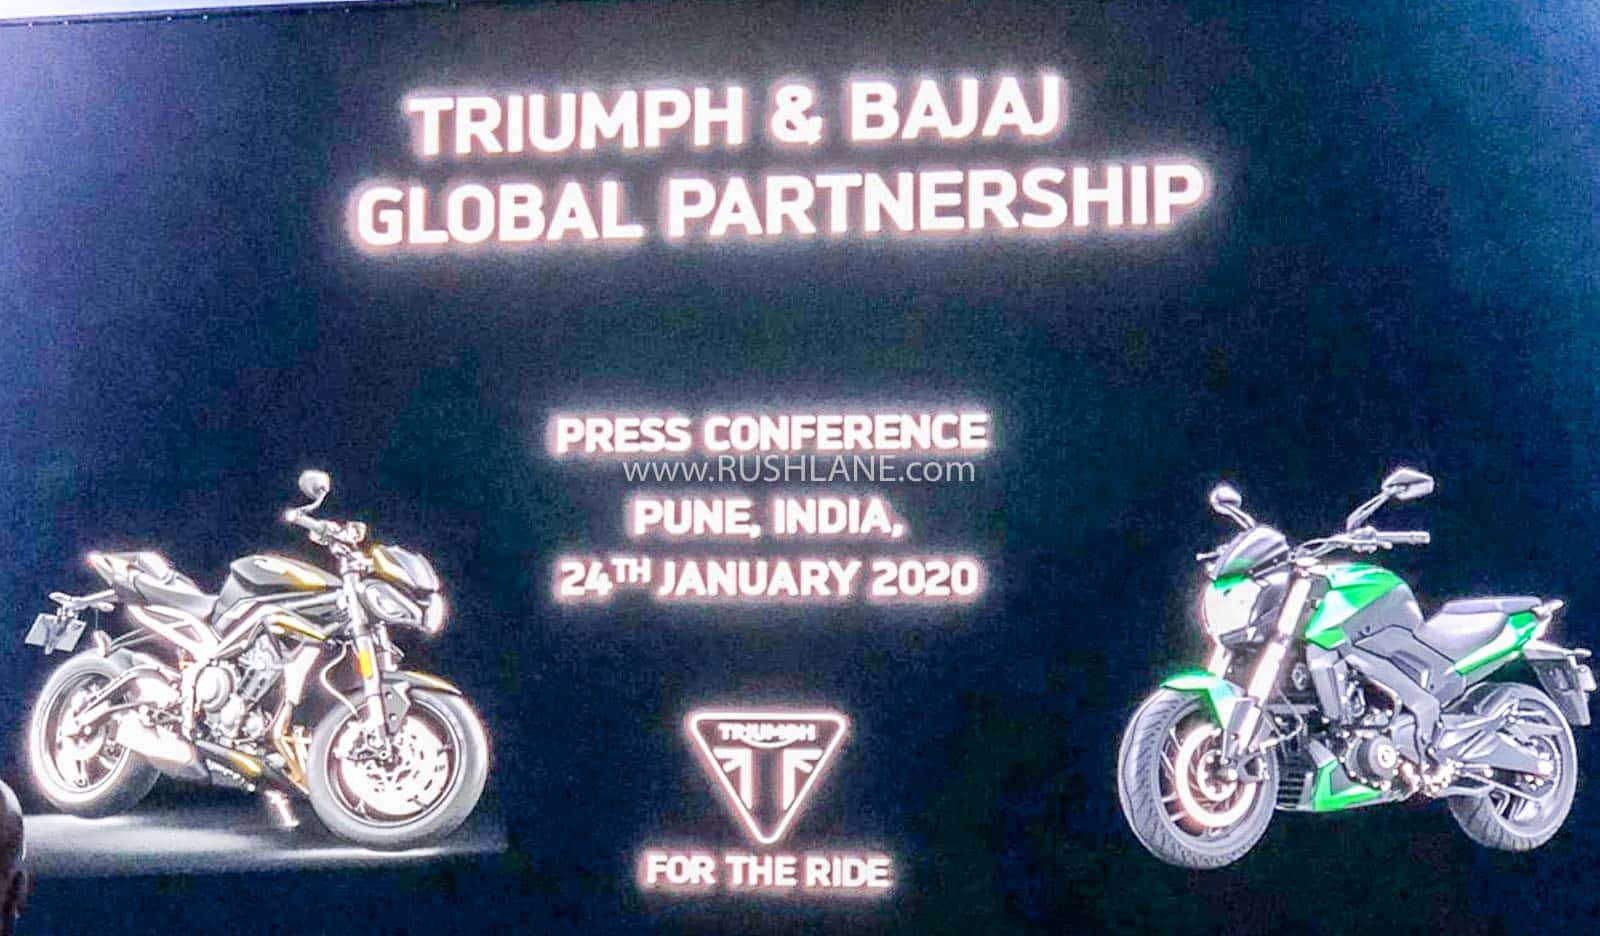 Bajaj Triumph motorcycle launch